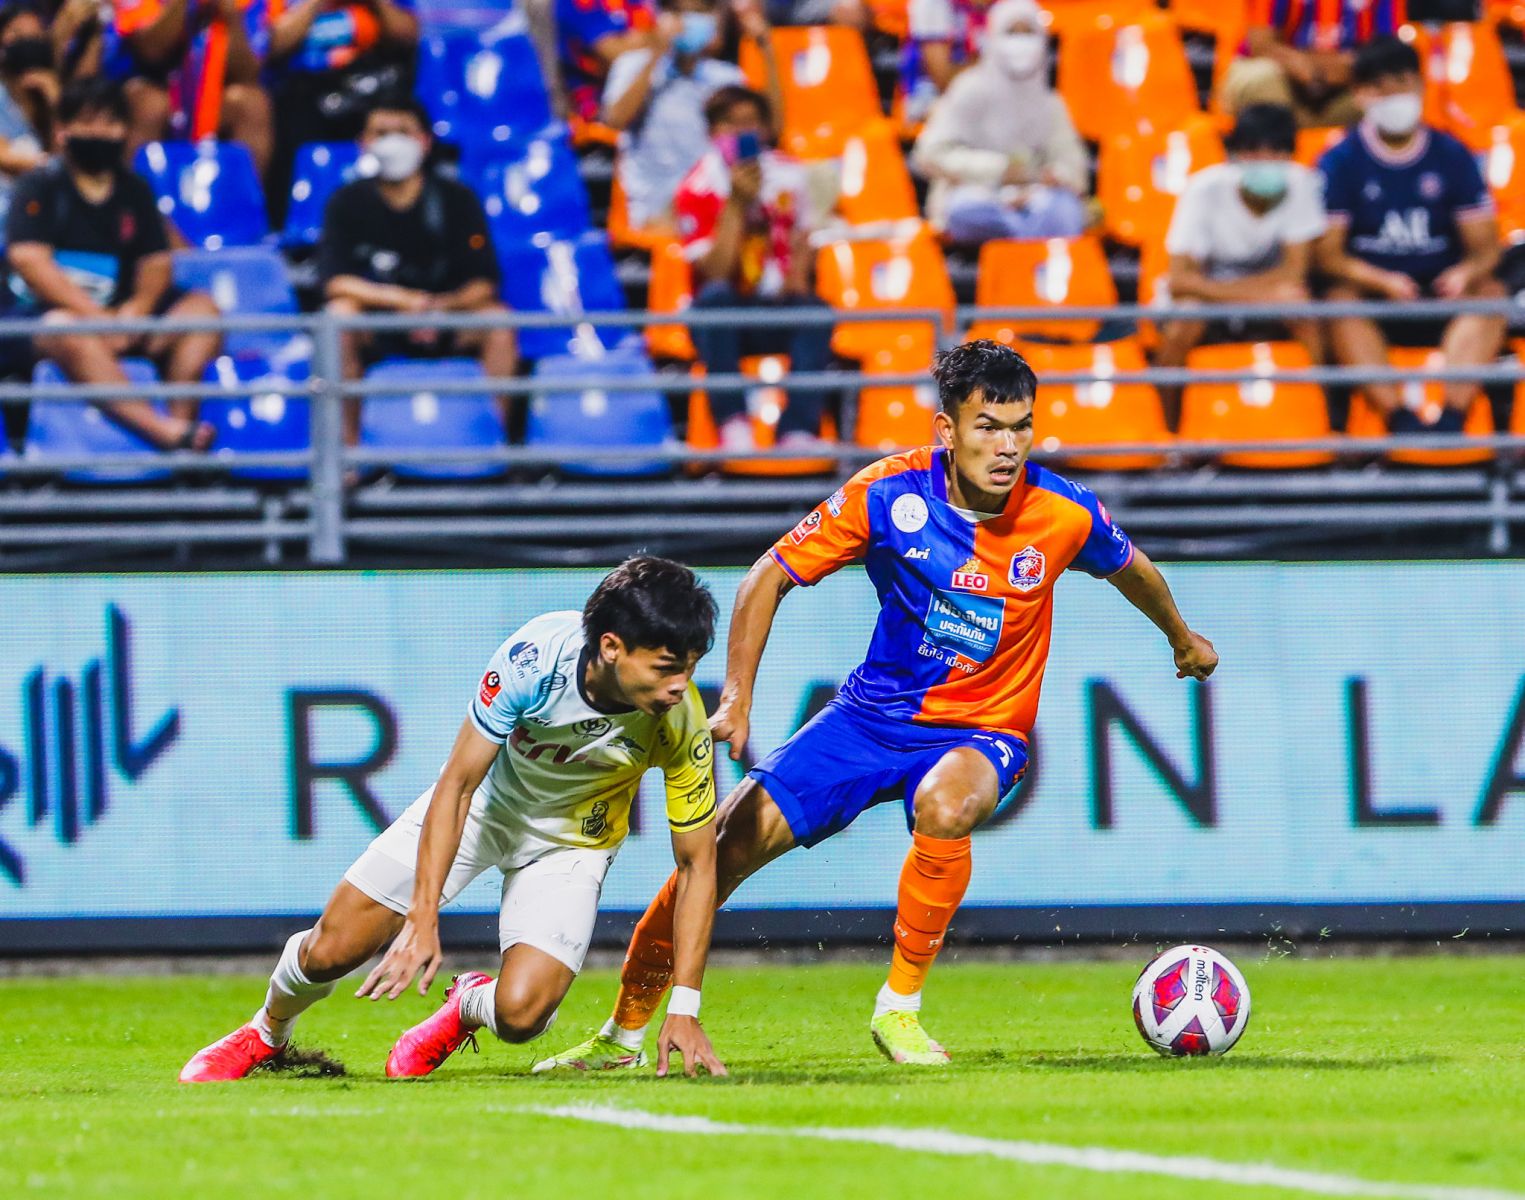 แข้งไทยฟอร์มฮอตพาเหรดติดทีมยอดเยี่ยมไทยลีกนัด 16 เกินครึ่ง